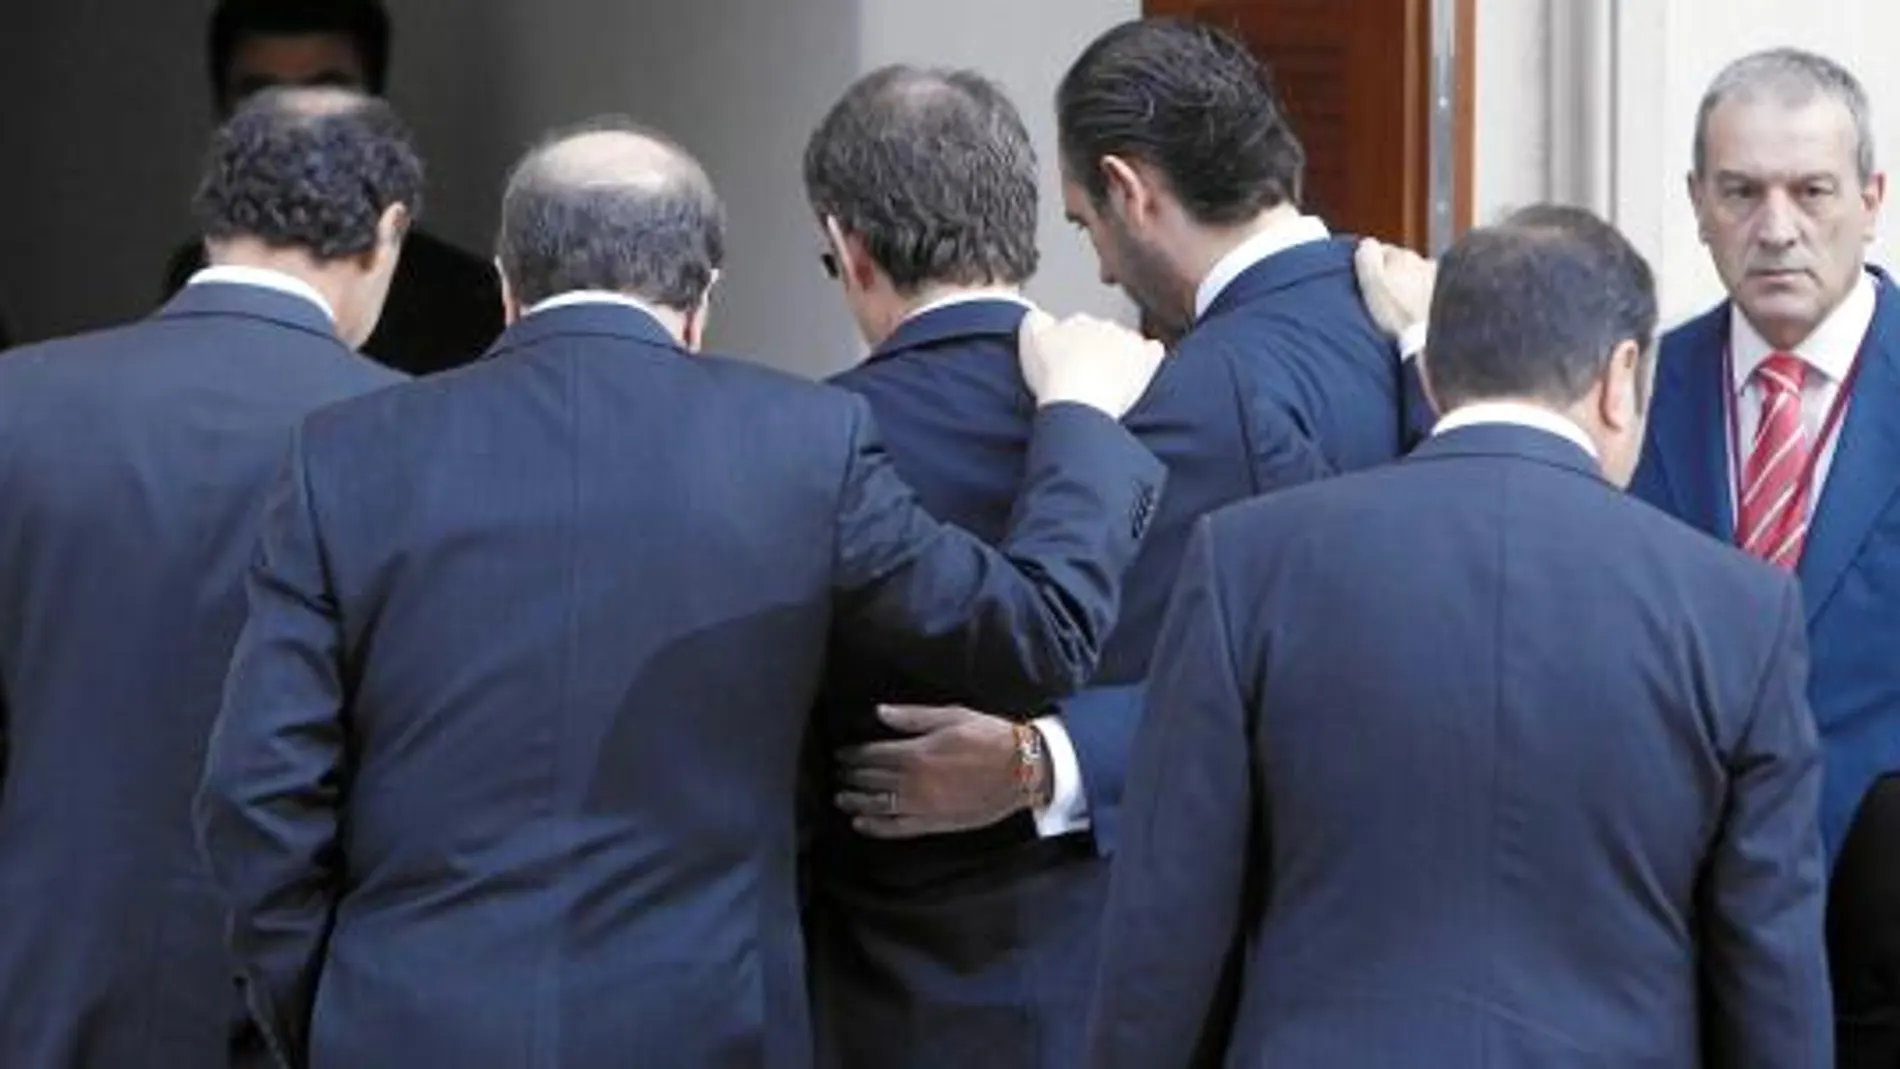 Los barones del PP escenificaron su unión. En la imagen, Ignacio Diego, Juan Vicente Herrera, Feijóo y Bauzá